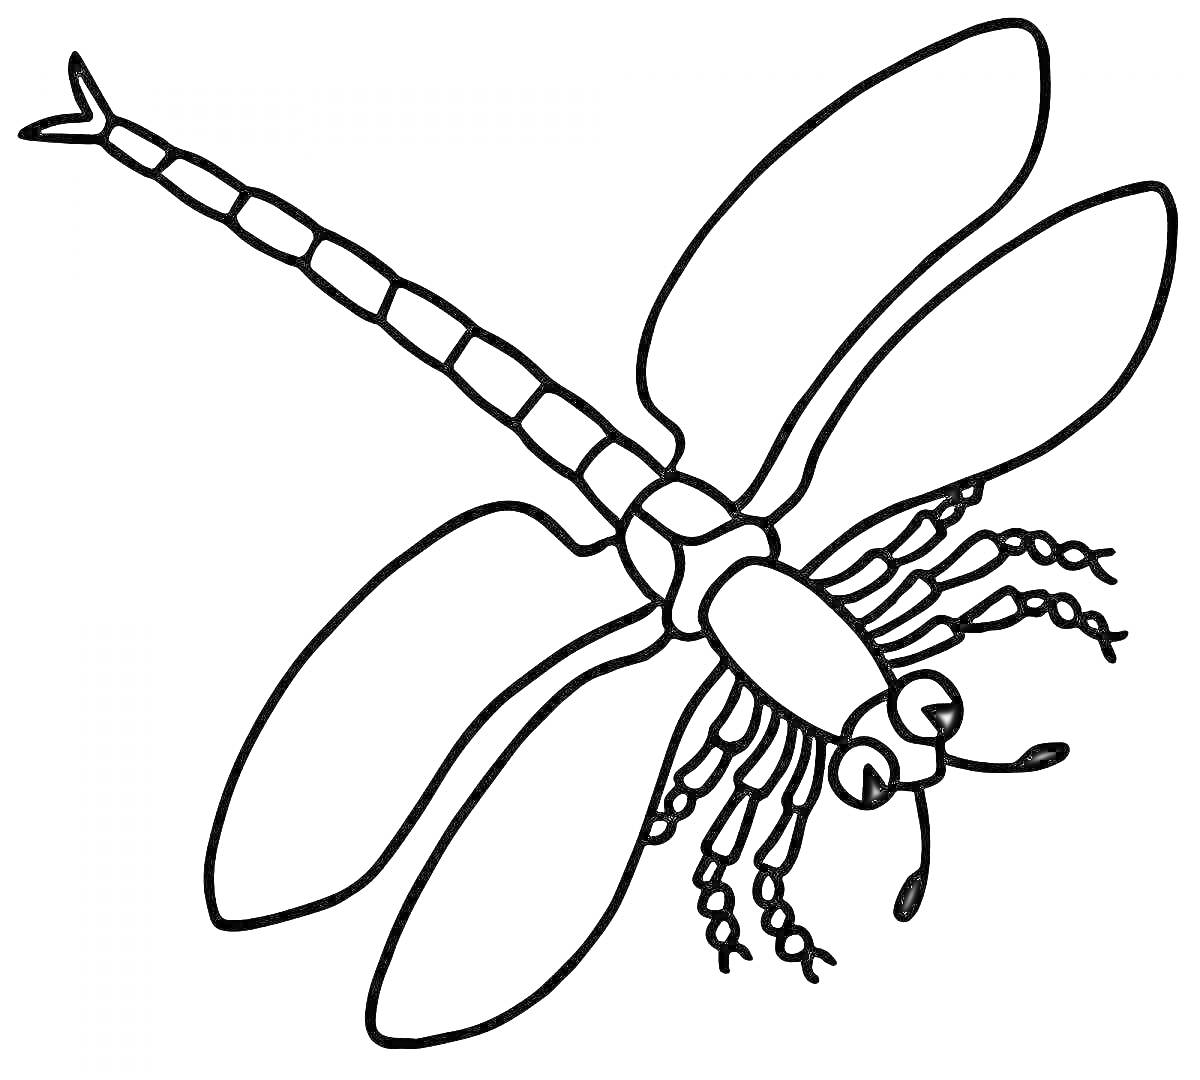 Раскраска Стрекоза с четырьмя крыльями и большими глазами на белом фоне для раскраски